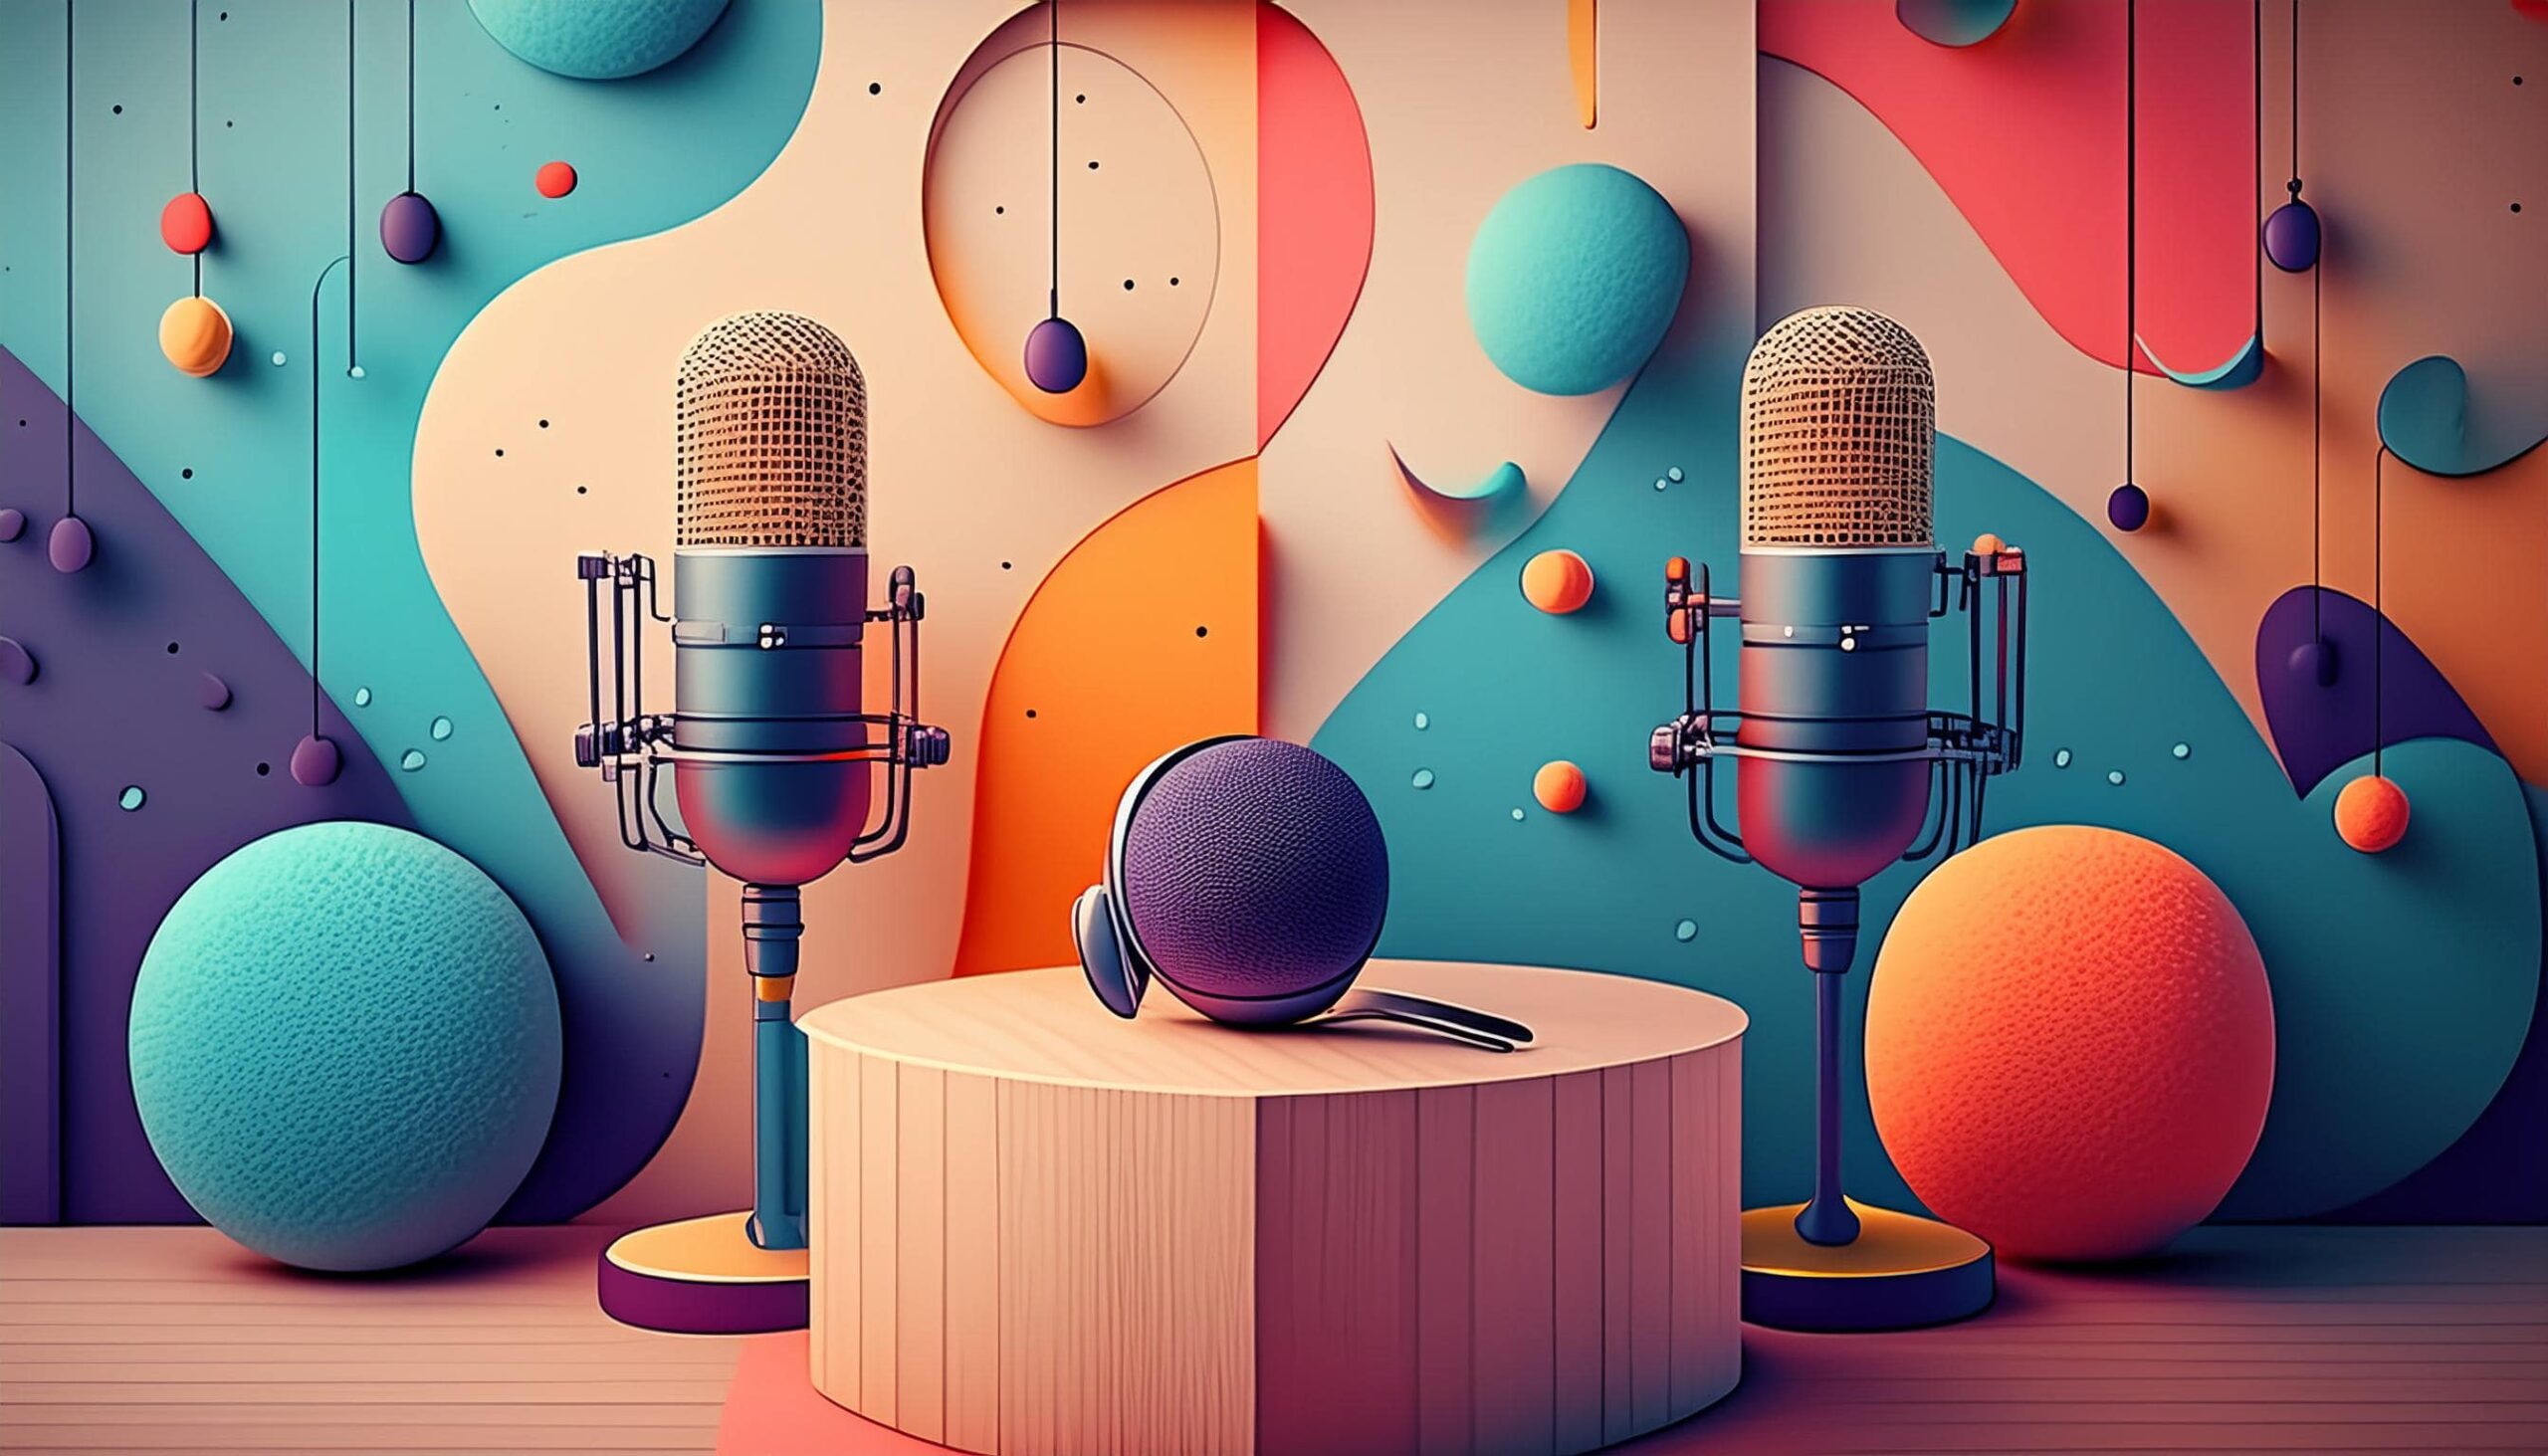 Företagspodcast: Ett modernt verktyg för att bygga varumärken